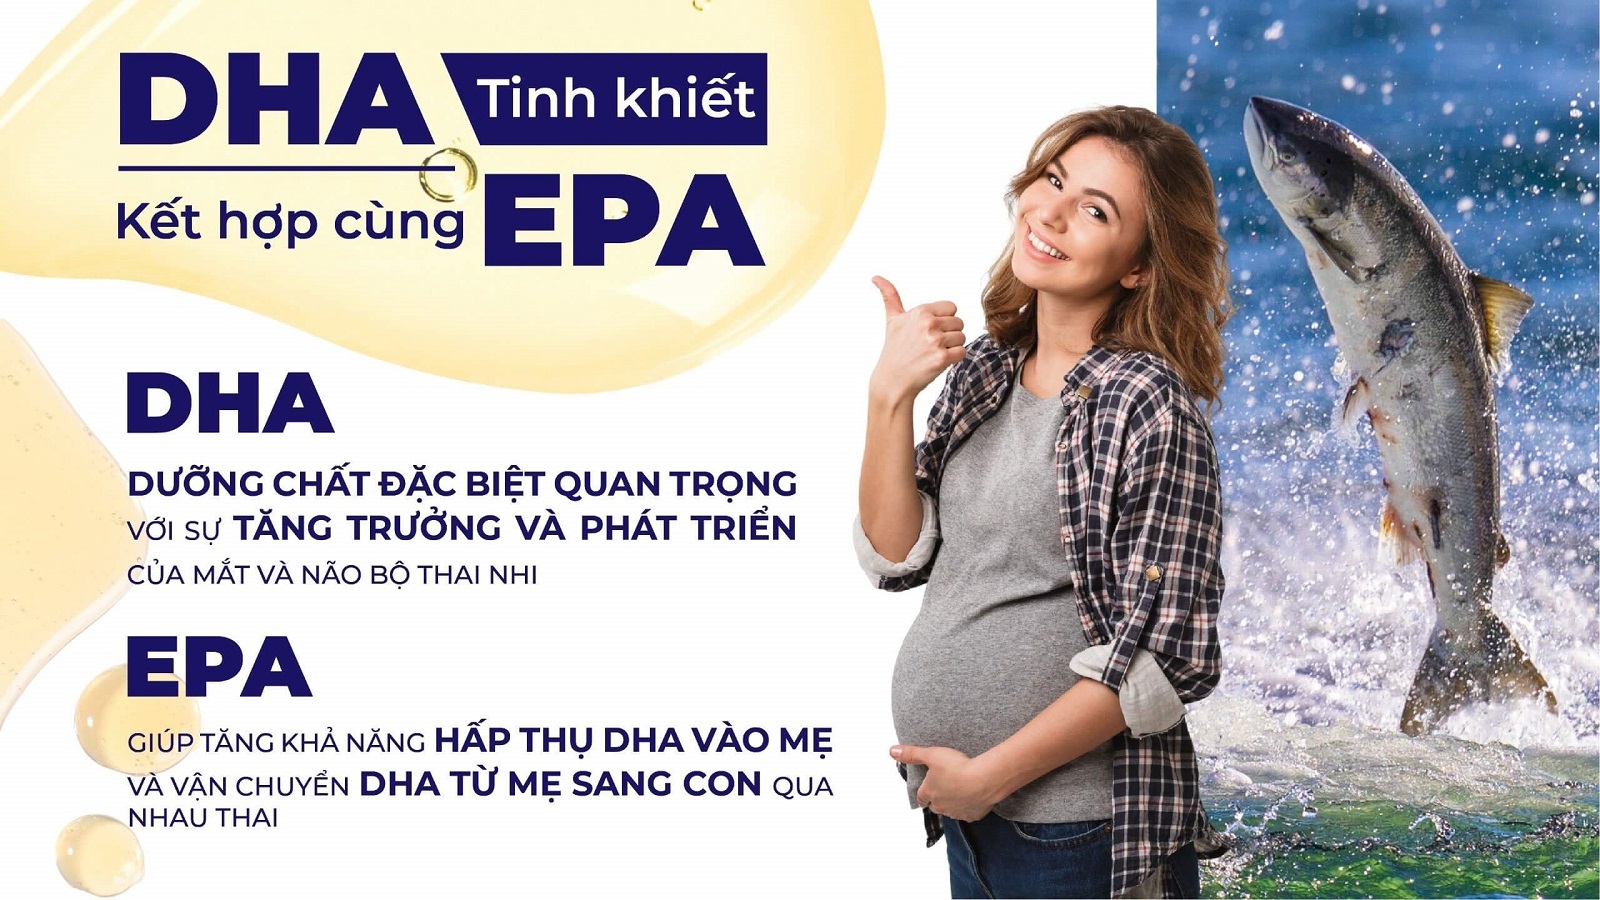 Tầm quan trọng của DHA và EPA